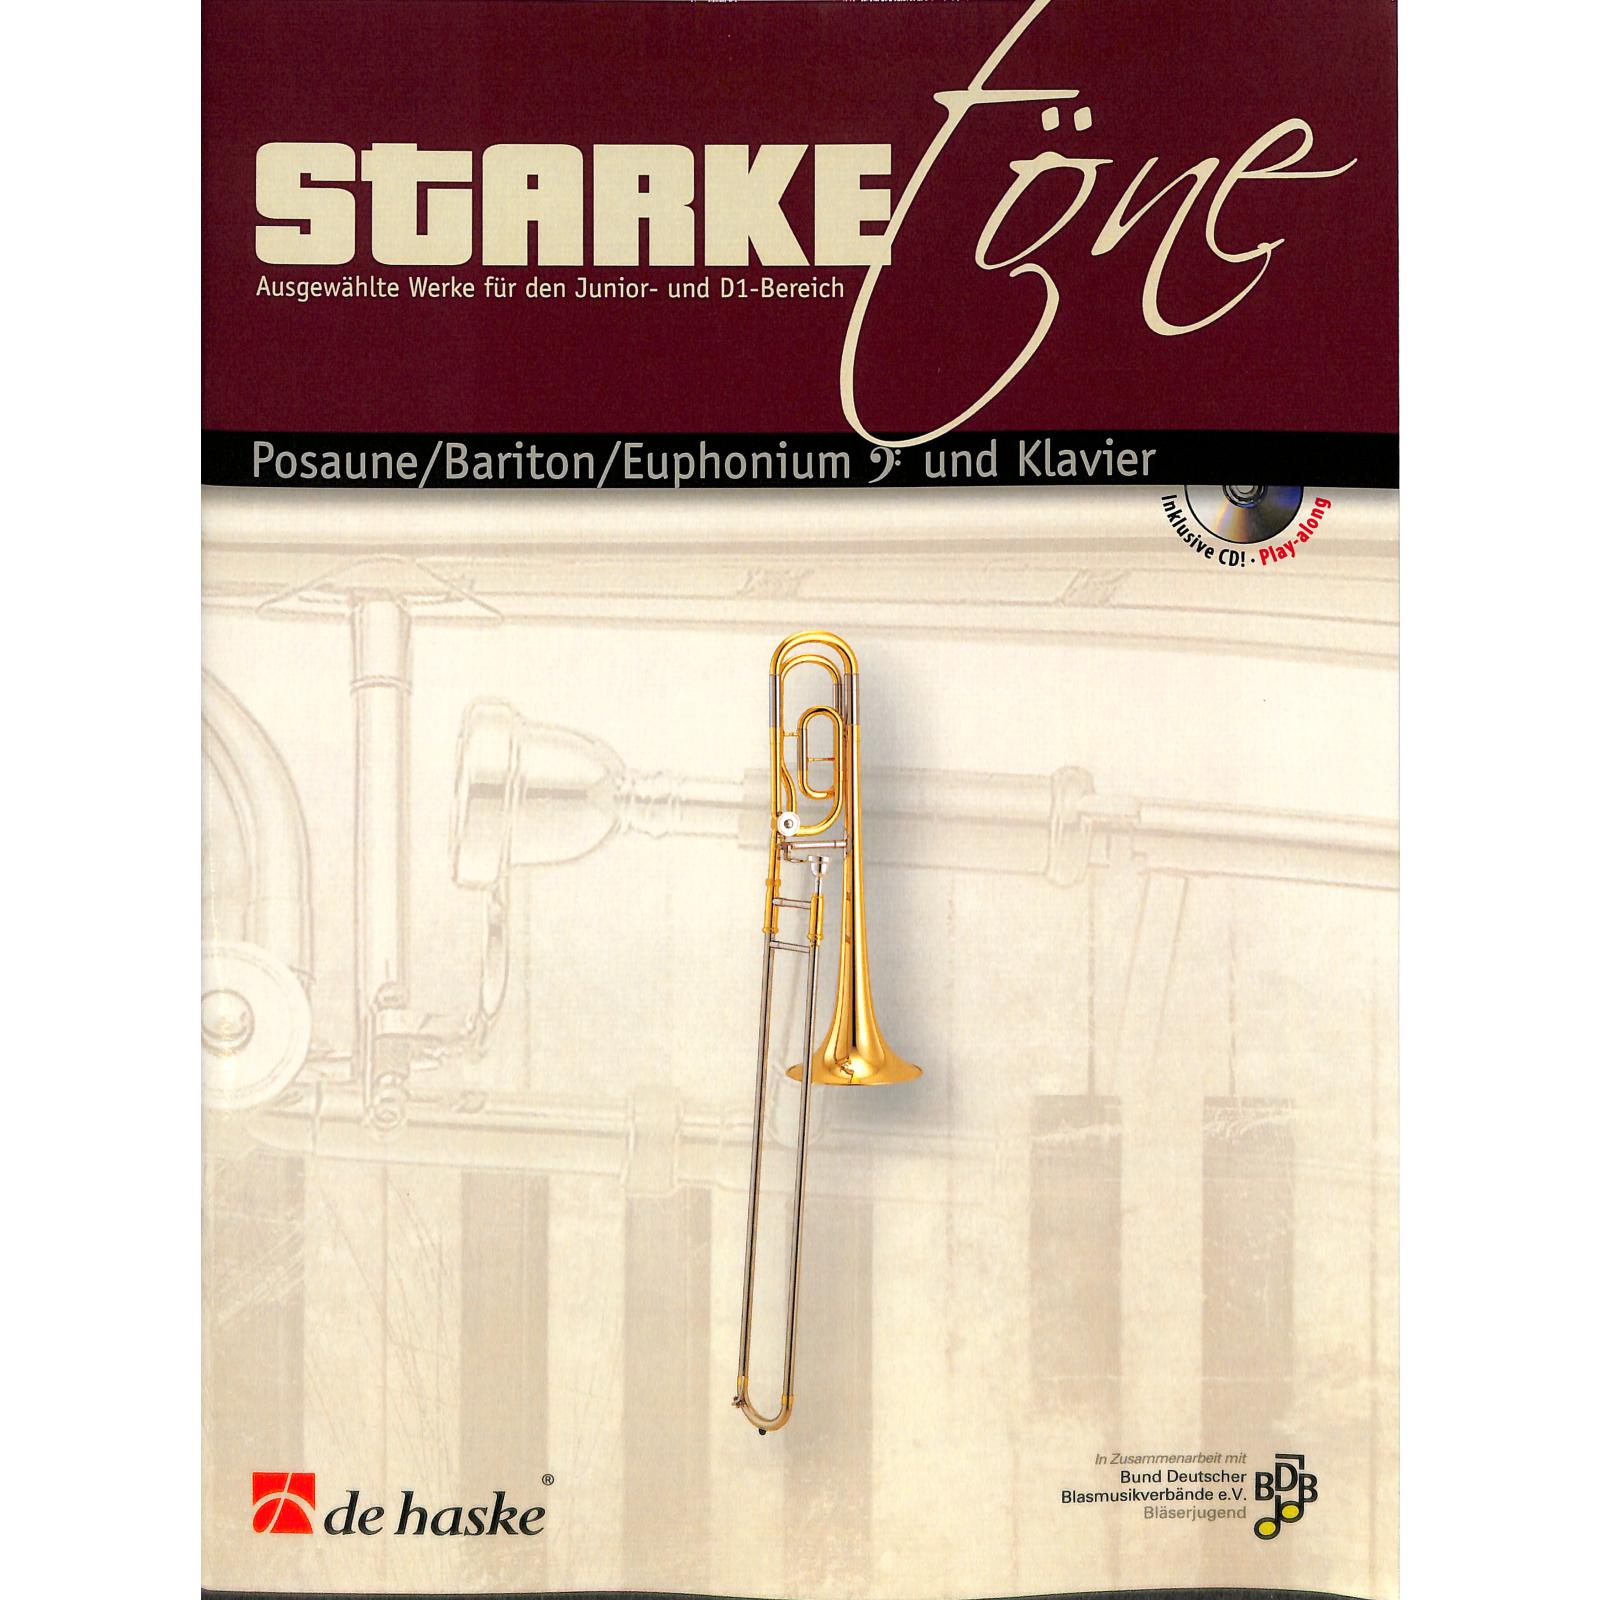 Starke Töne - Posaune/Klavier CD für Junior- und D1-Bereich